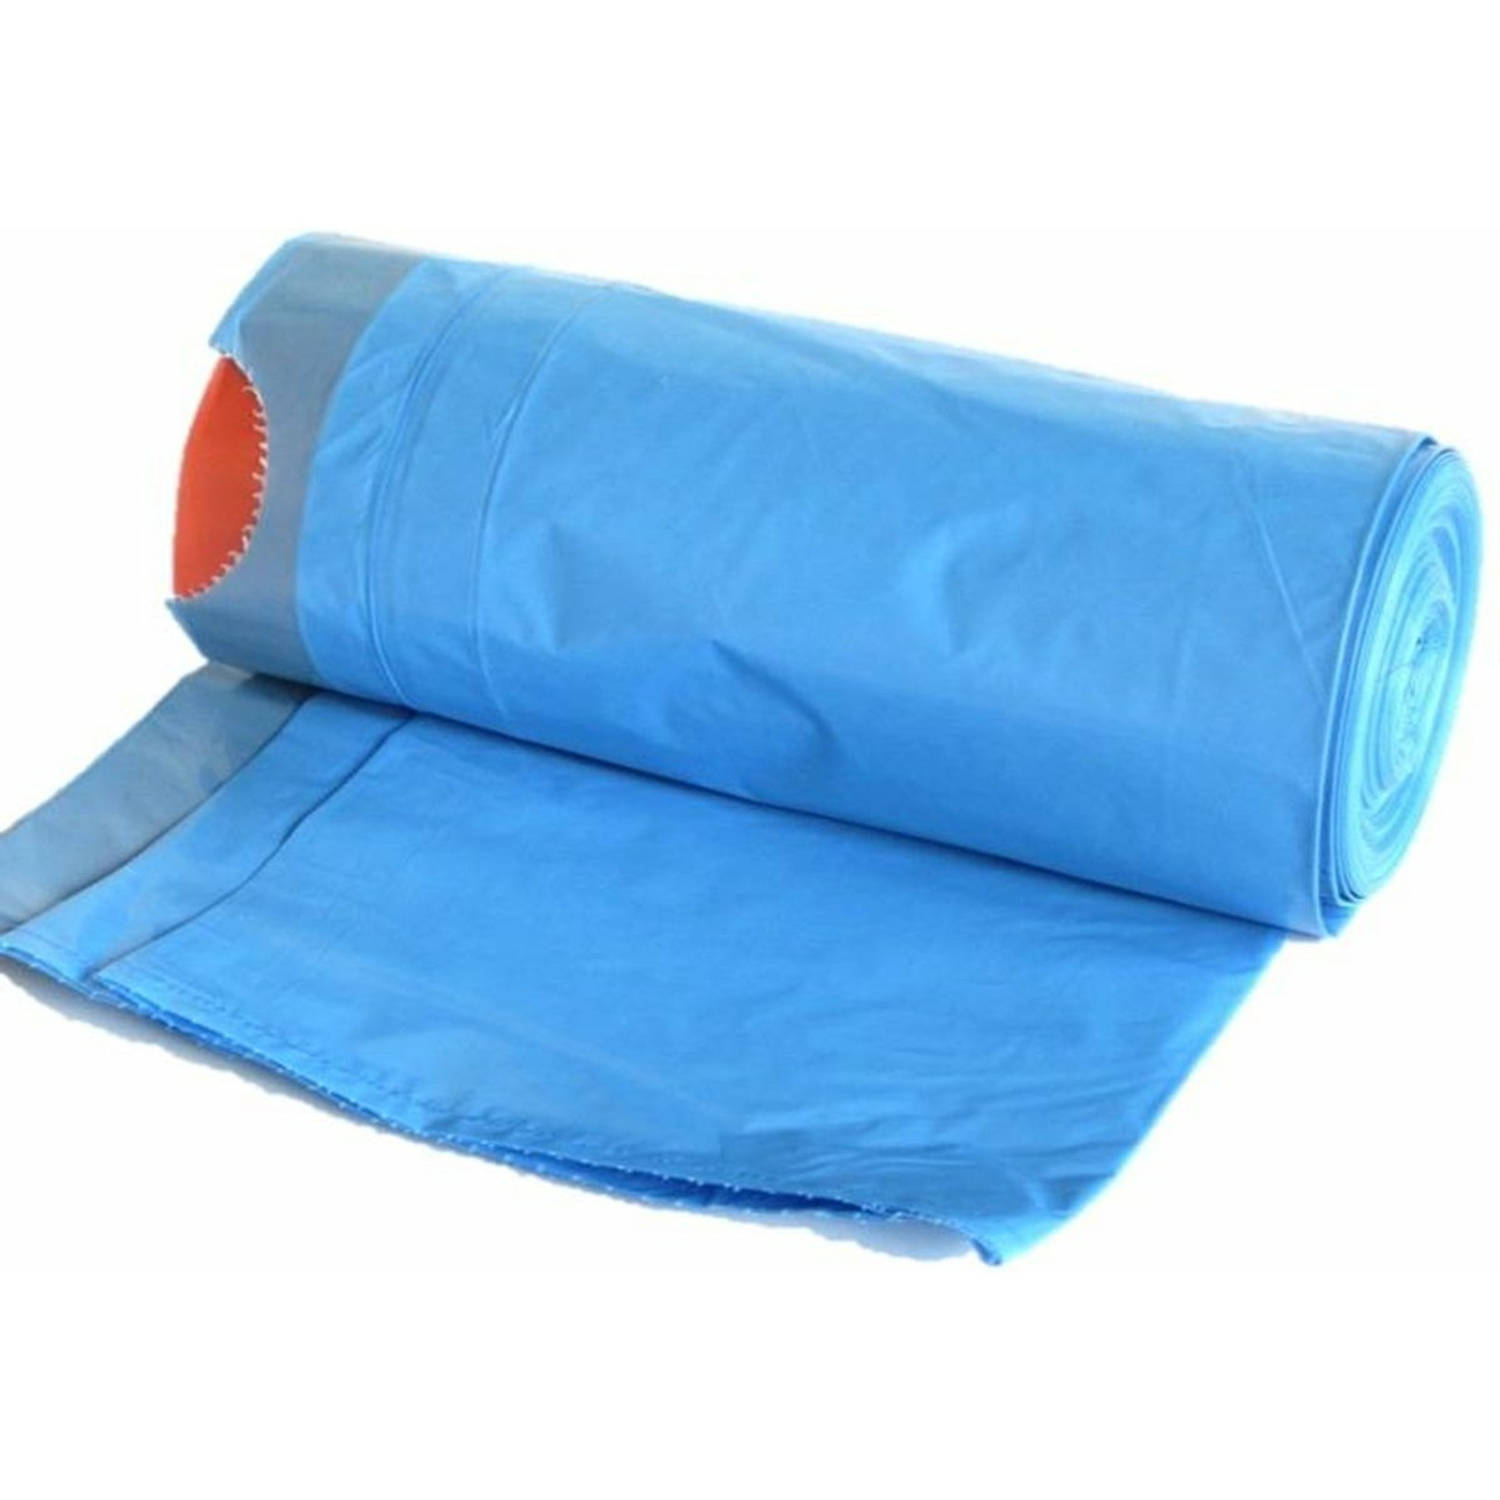 Afvalzakken-vuilniszakken 15x 35 liter blauw 11,5 mic. Vuilniszakken